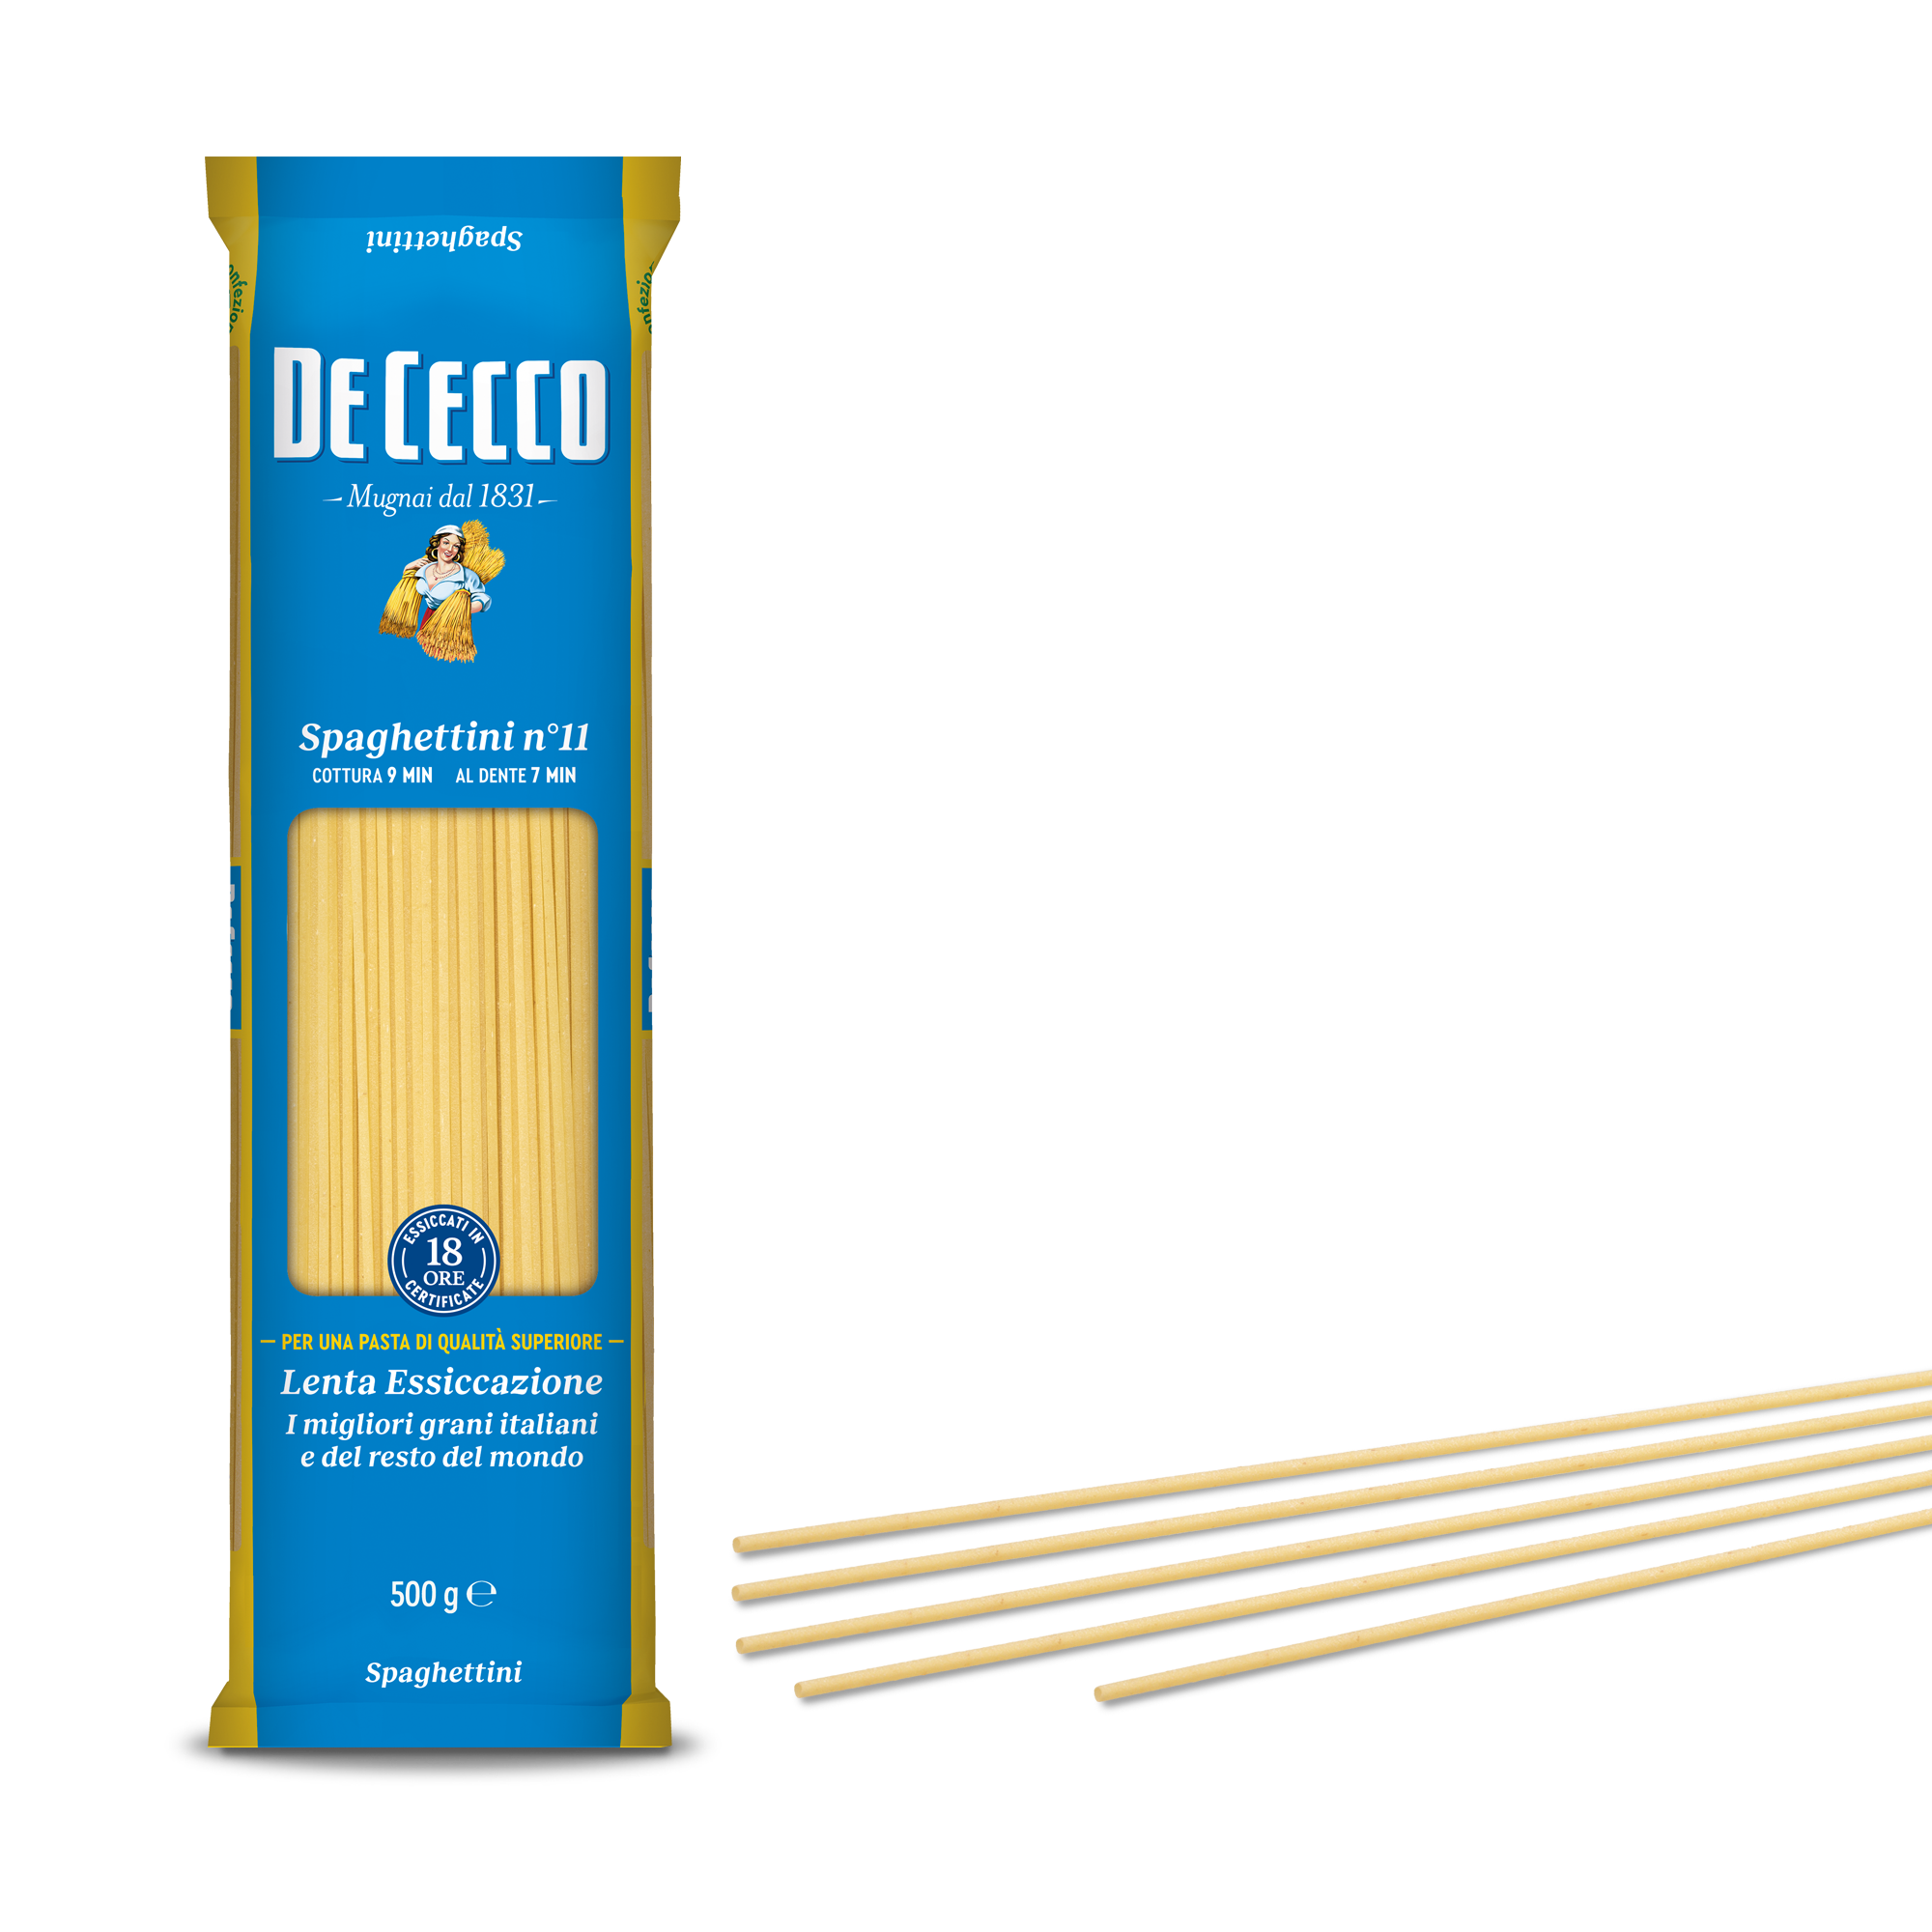 De Cecco Spaghettini n° 11 500g